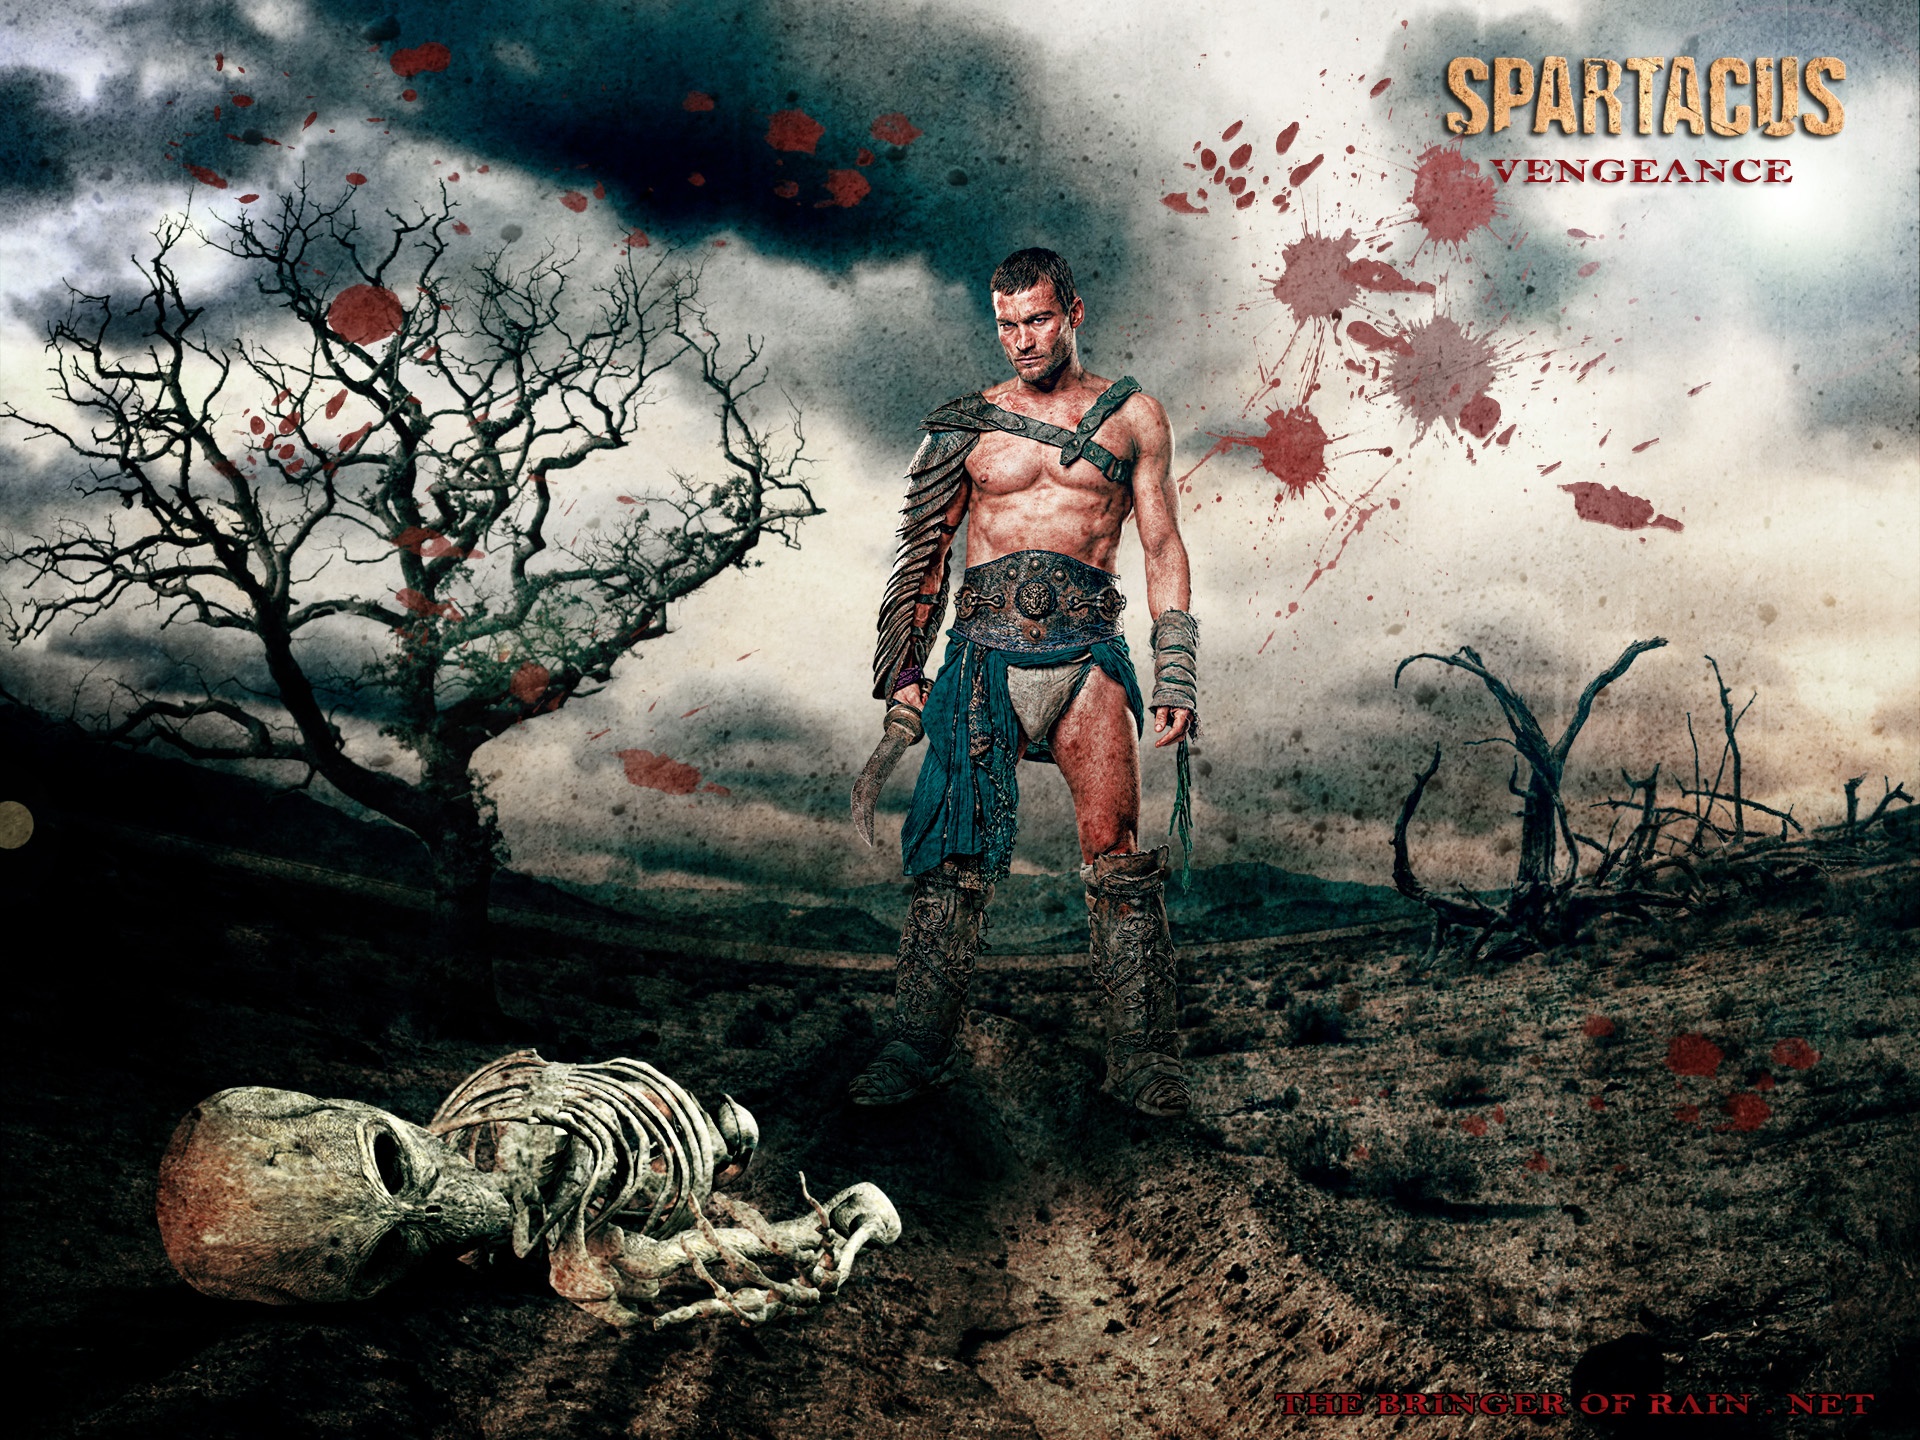 papel pintado spartacus,humano,portada del álbum,cg artwork,cielo,árbol